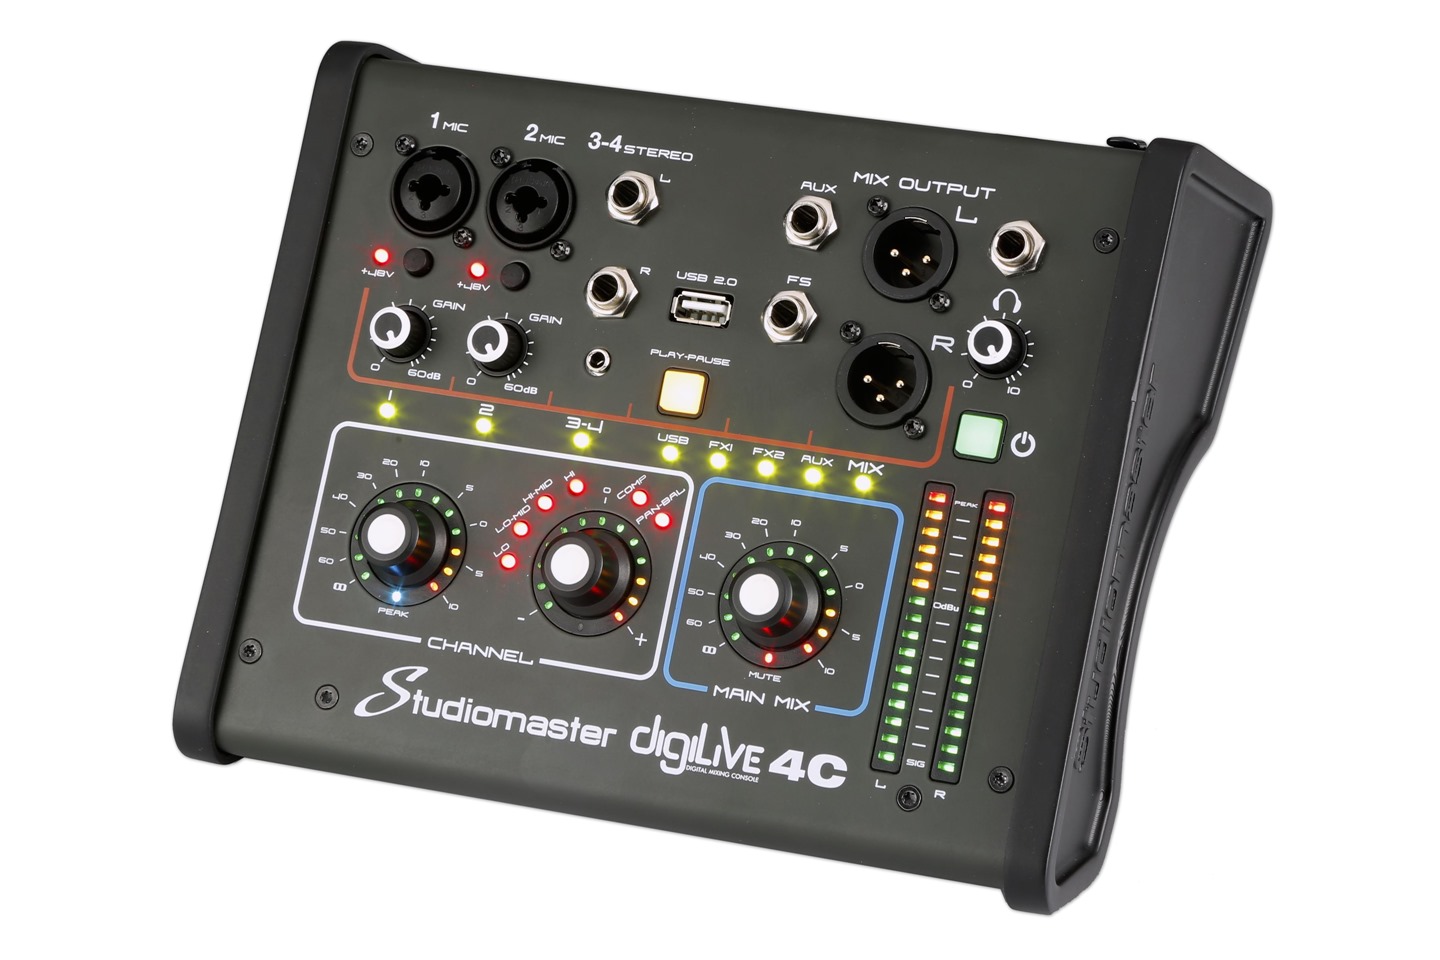 Studiomaster Digilive 4c - Digital mixing desk - Variation 1